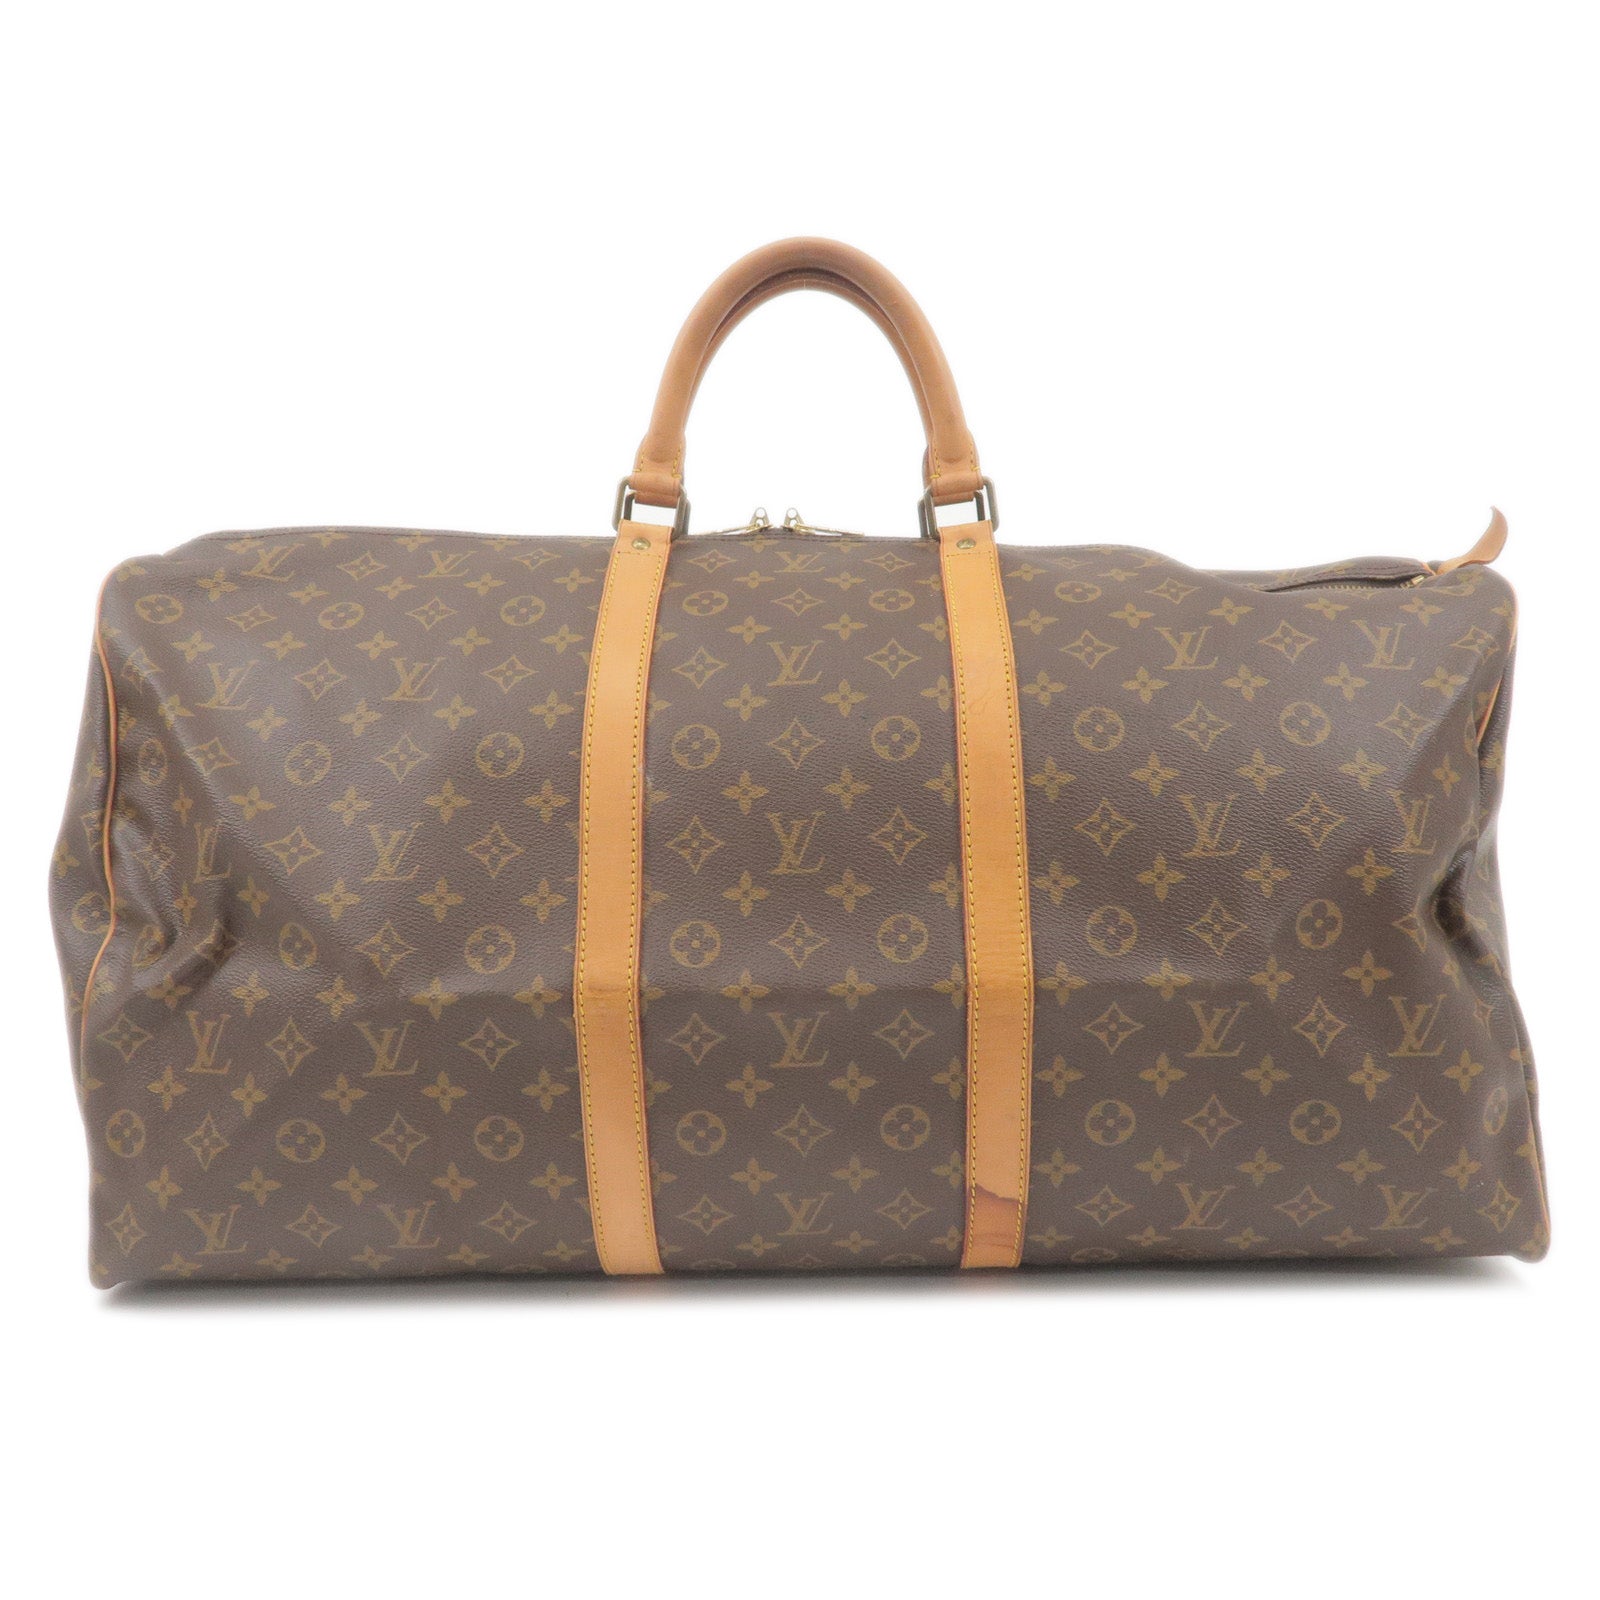 Louis Vuitton 2006 Pre-owned Monogram Shoulder Bag